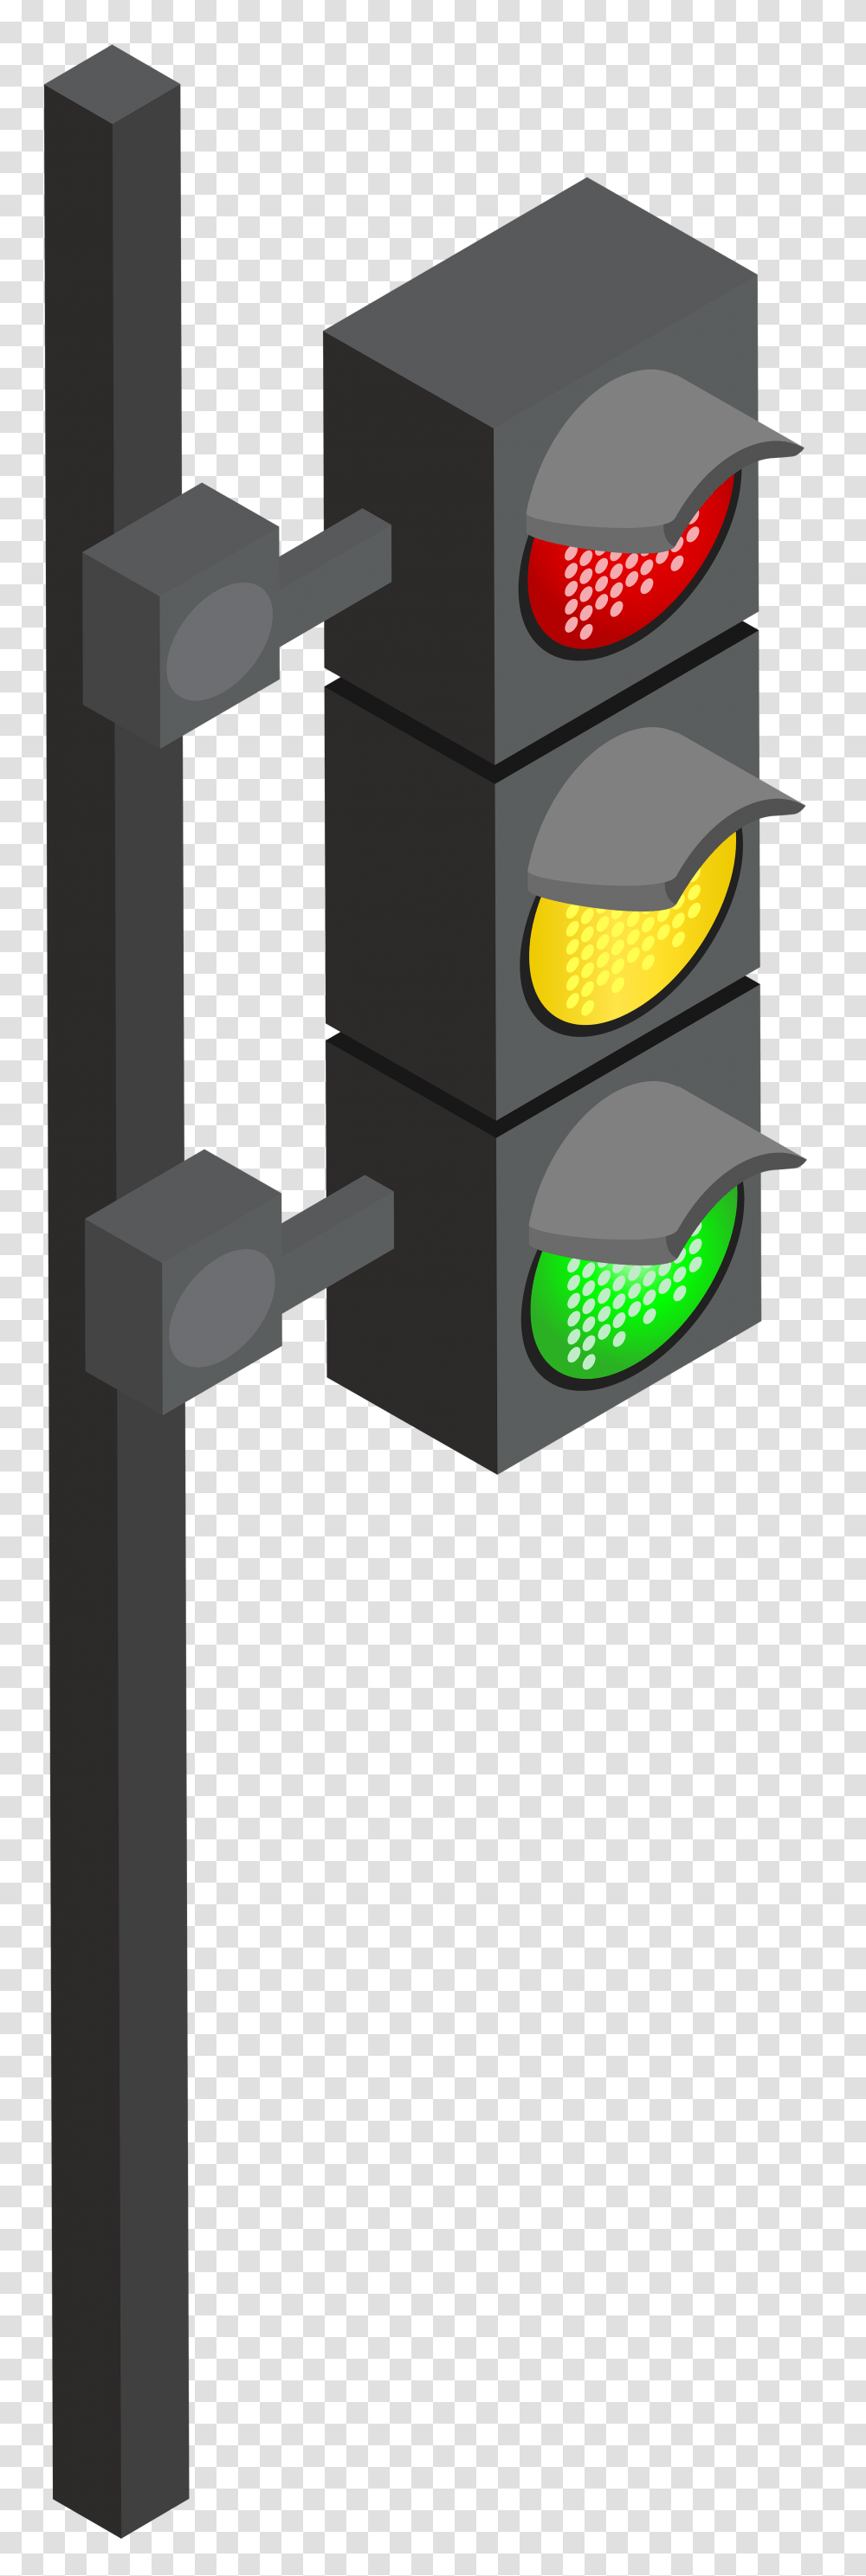 Traffic Light Clip Art, Cross, Headlight Transparent Png